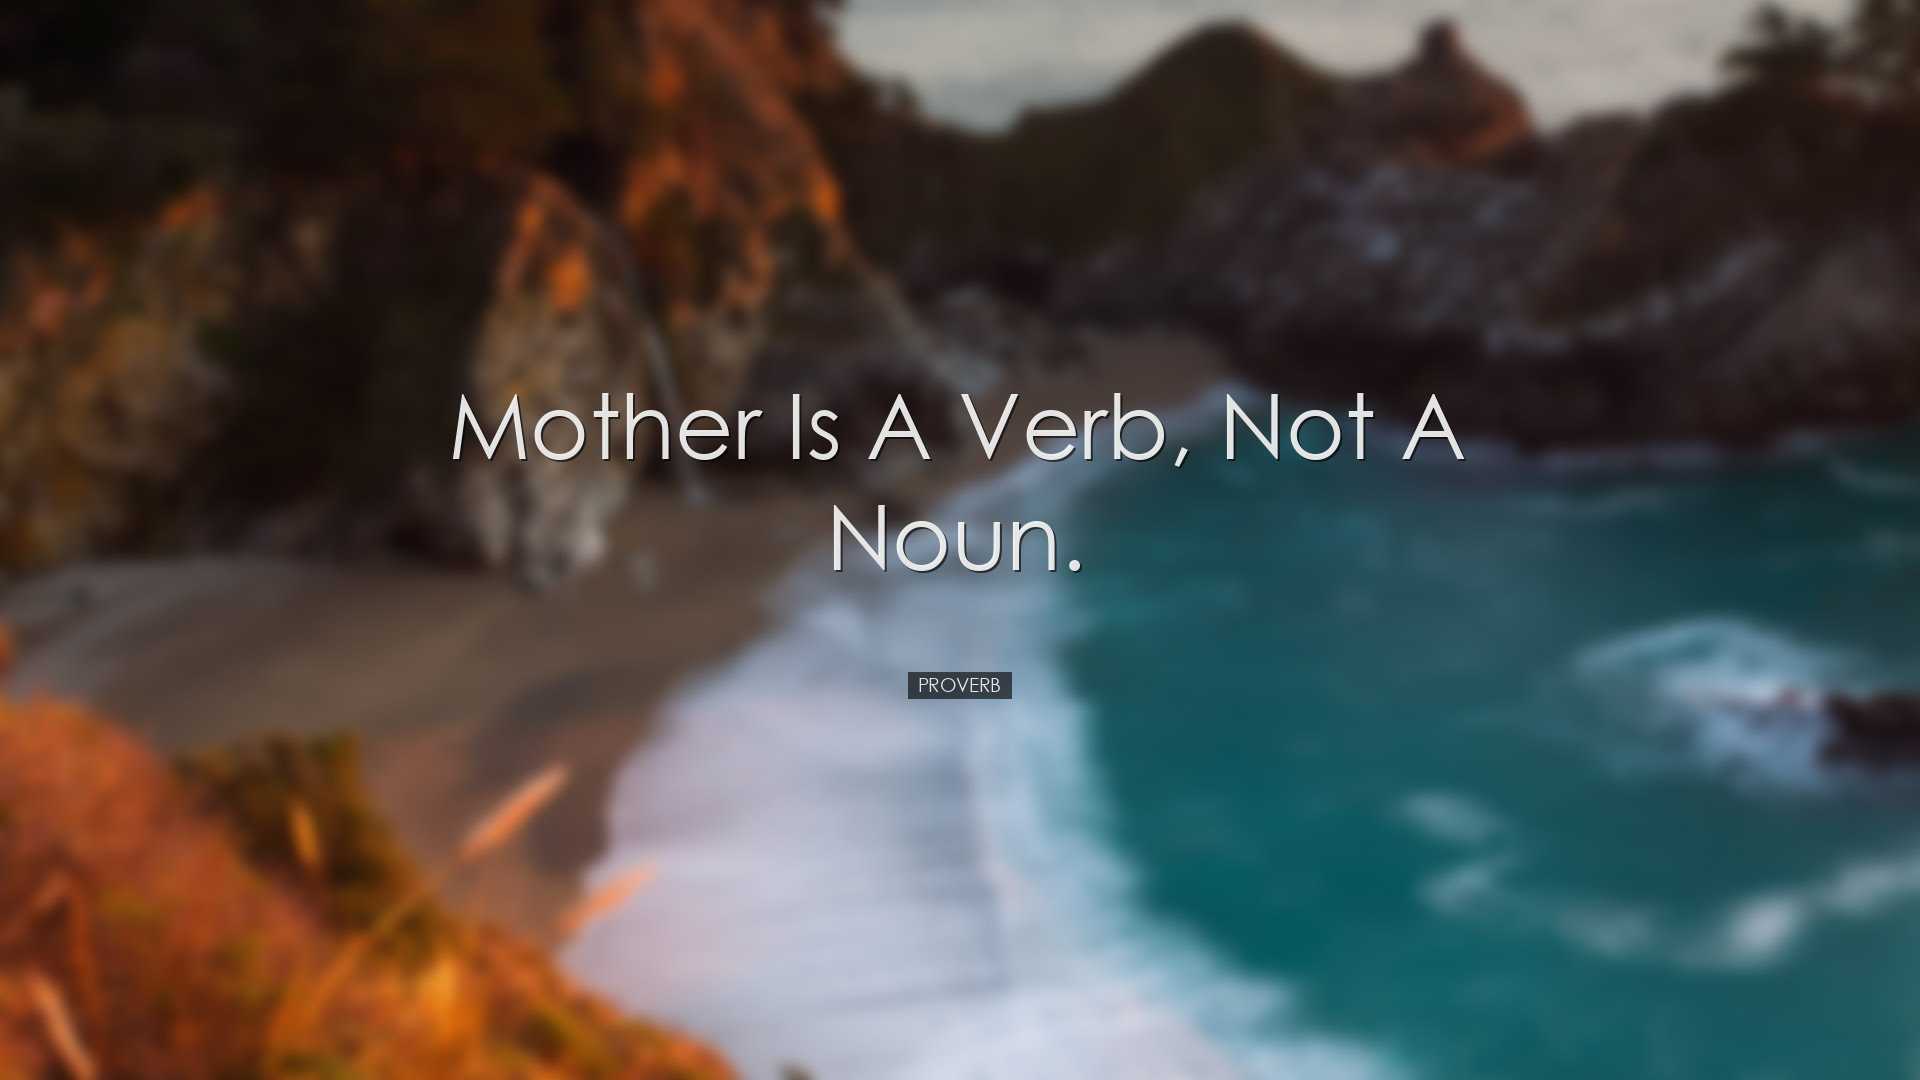 Mother is a verb, not a noun. - Proverb